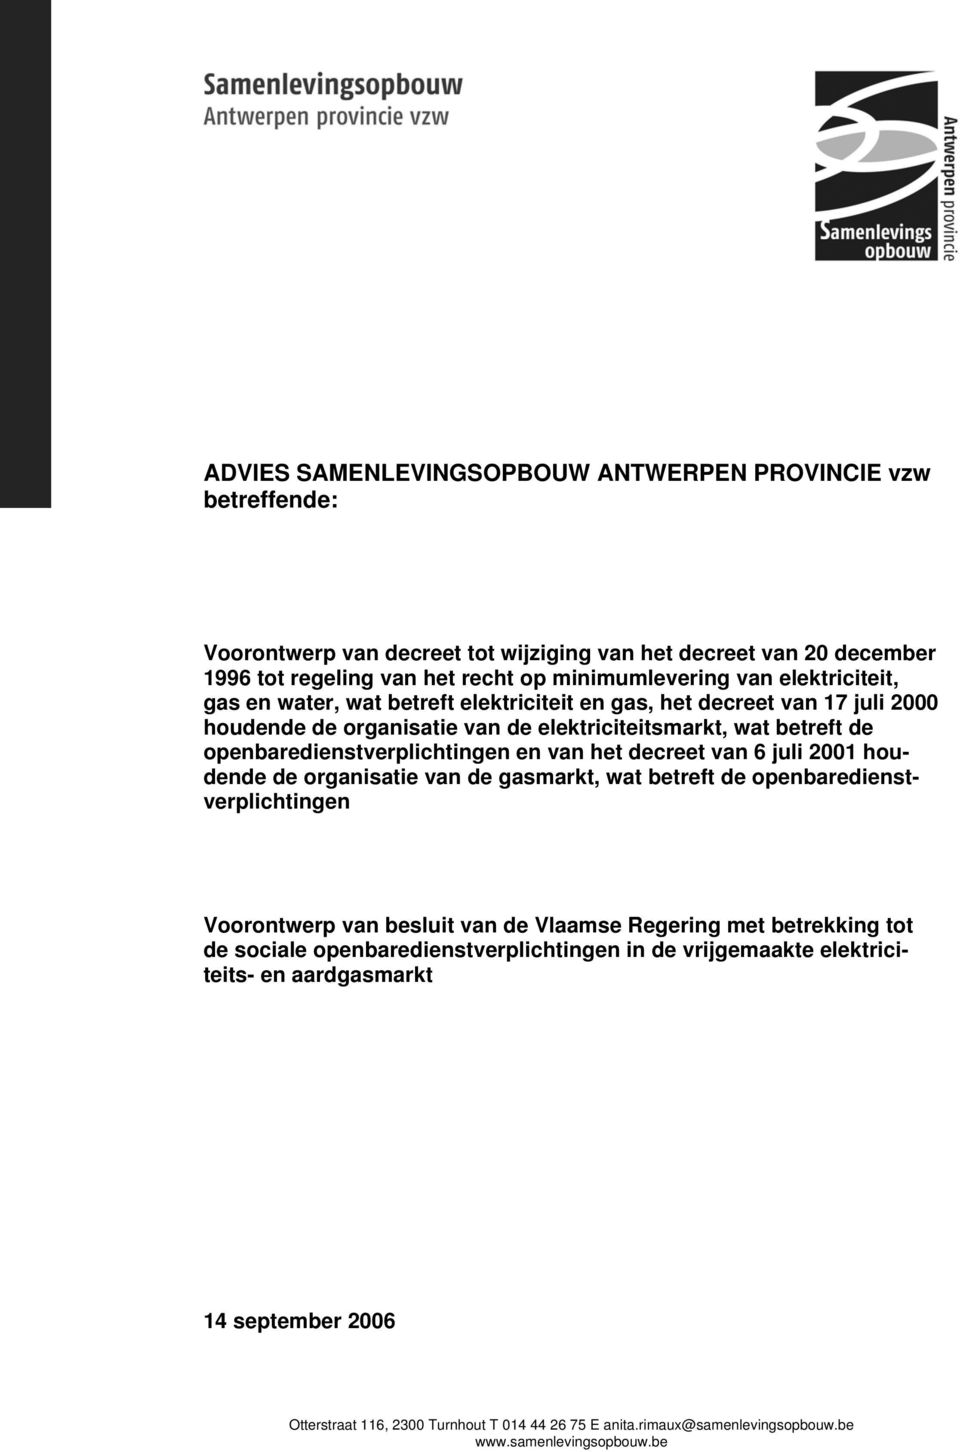 het decreet van 6 juli 2001 houdende de organisatie van de gasmarkt, wat betreft de openbaredienstverplichtingen Voorontwerp van besluit van de Vlaamse Regering met betrekking tot de sociale